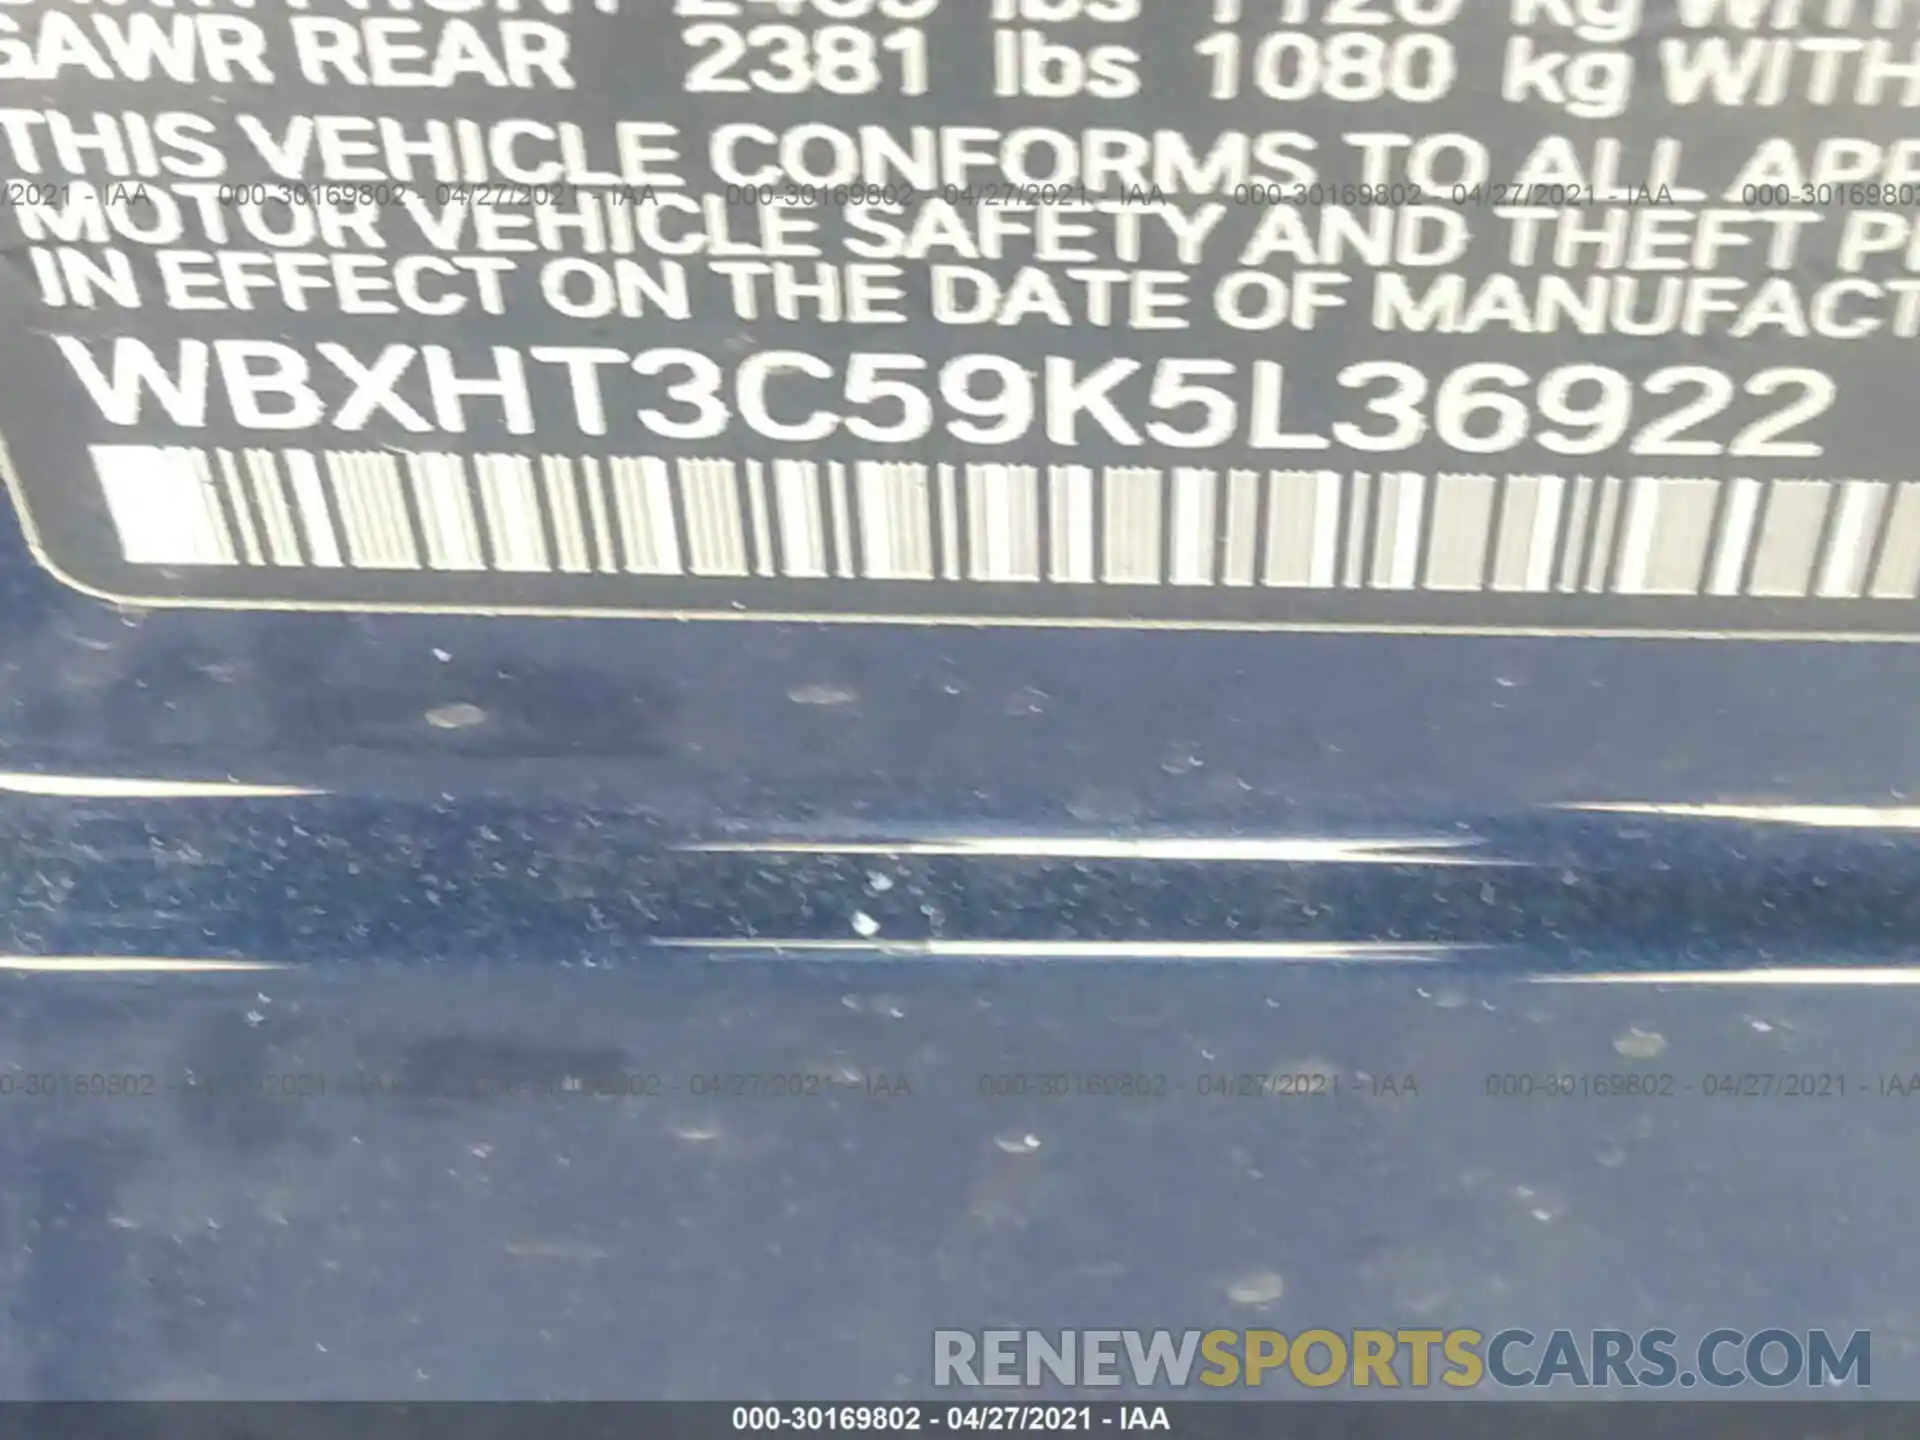 9 Photograph of a damaged car WBXHT3C59K5L36922 BMW X1 2019